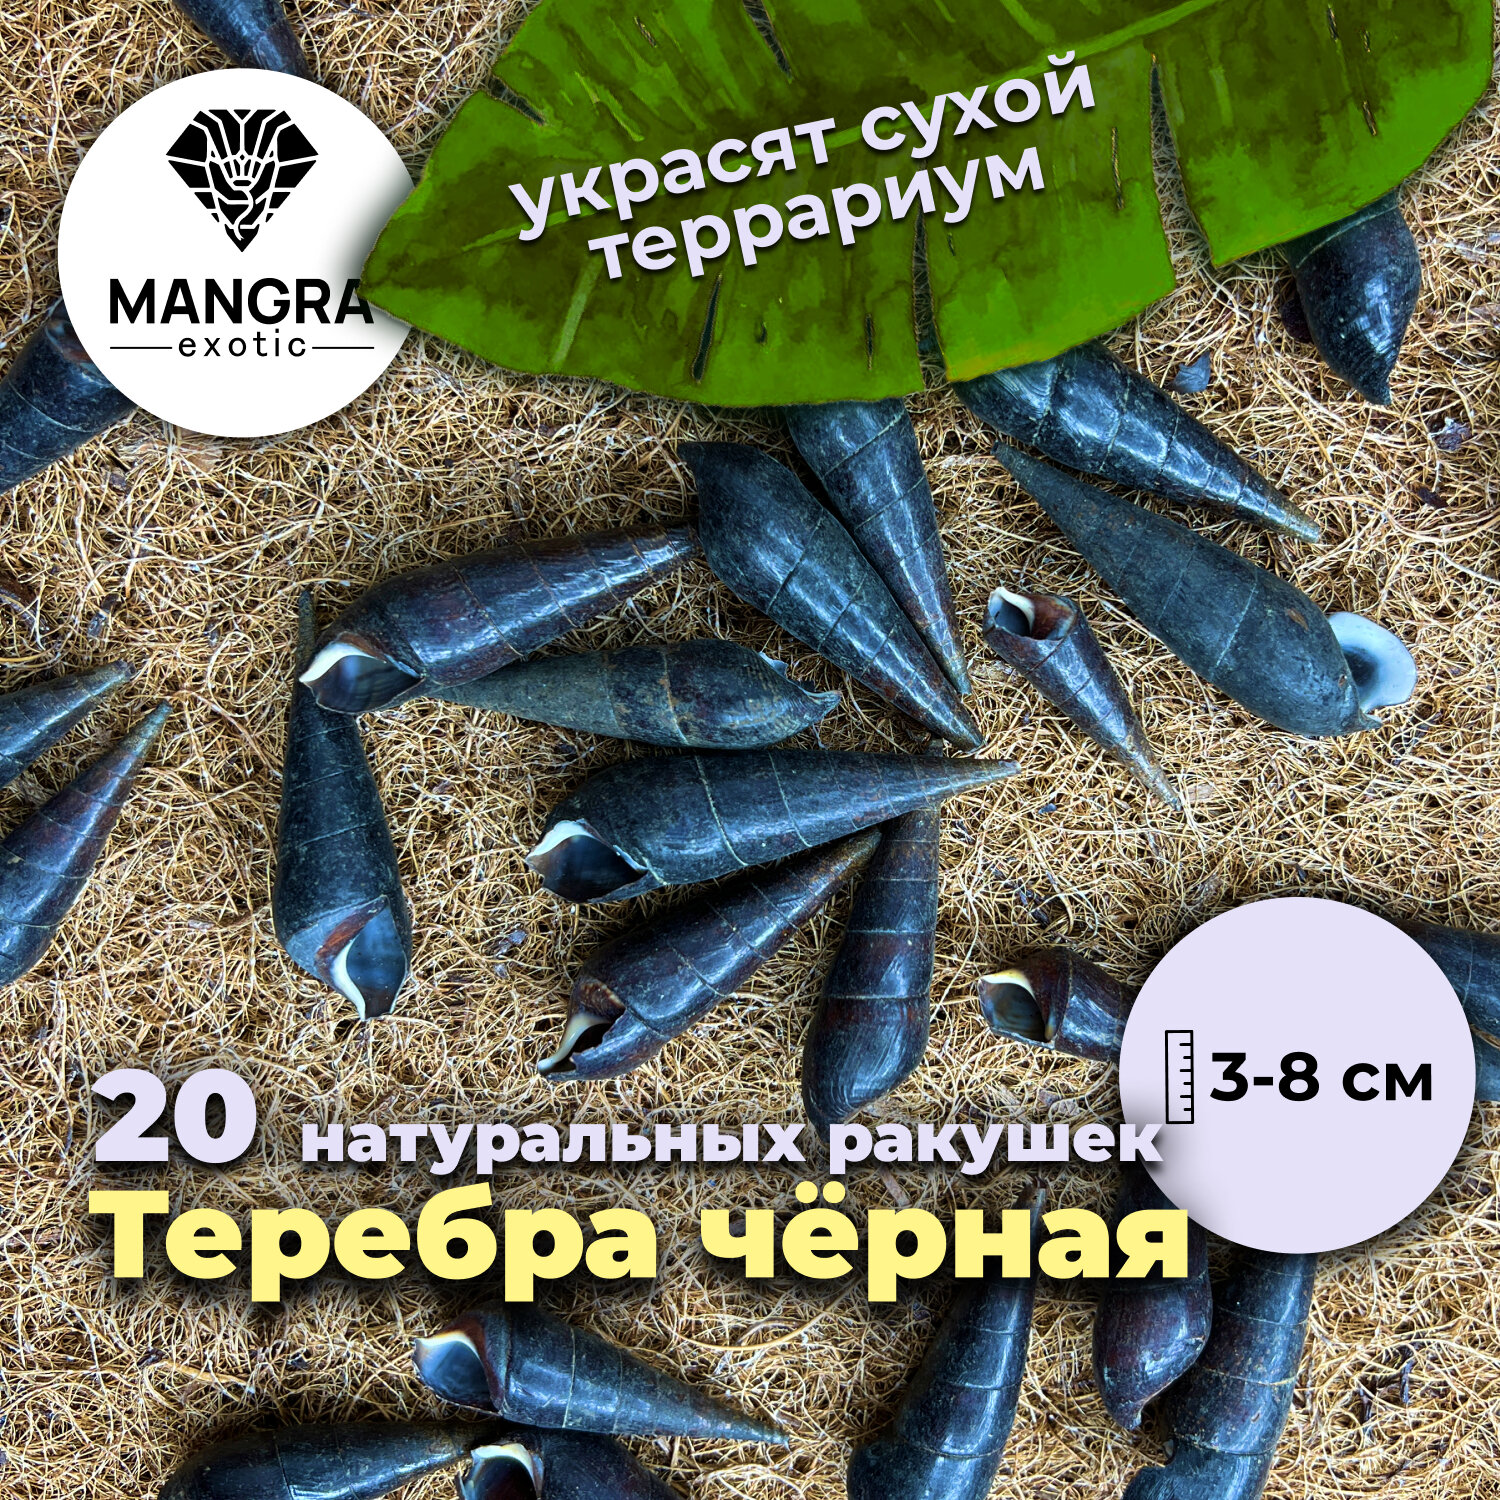 20 натуральных ракушек Теребра чёрная (3-8 см) - декор для террариума + укрытие для насекомых морских черепашек рачков и крабов